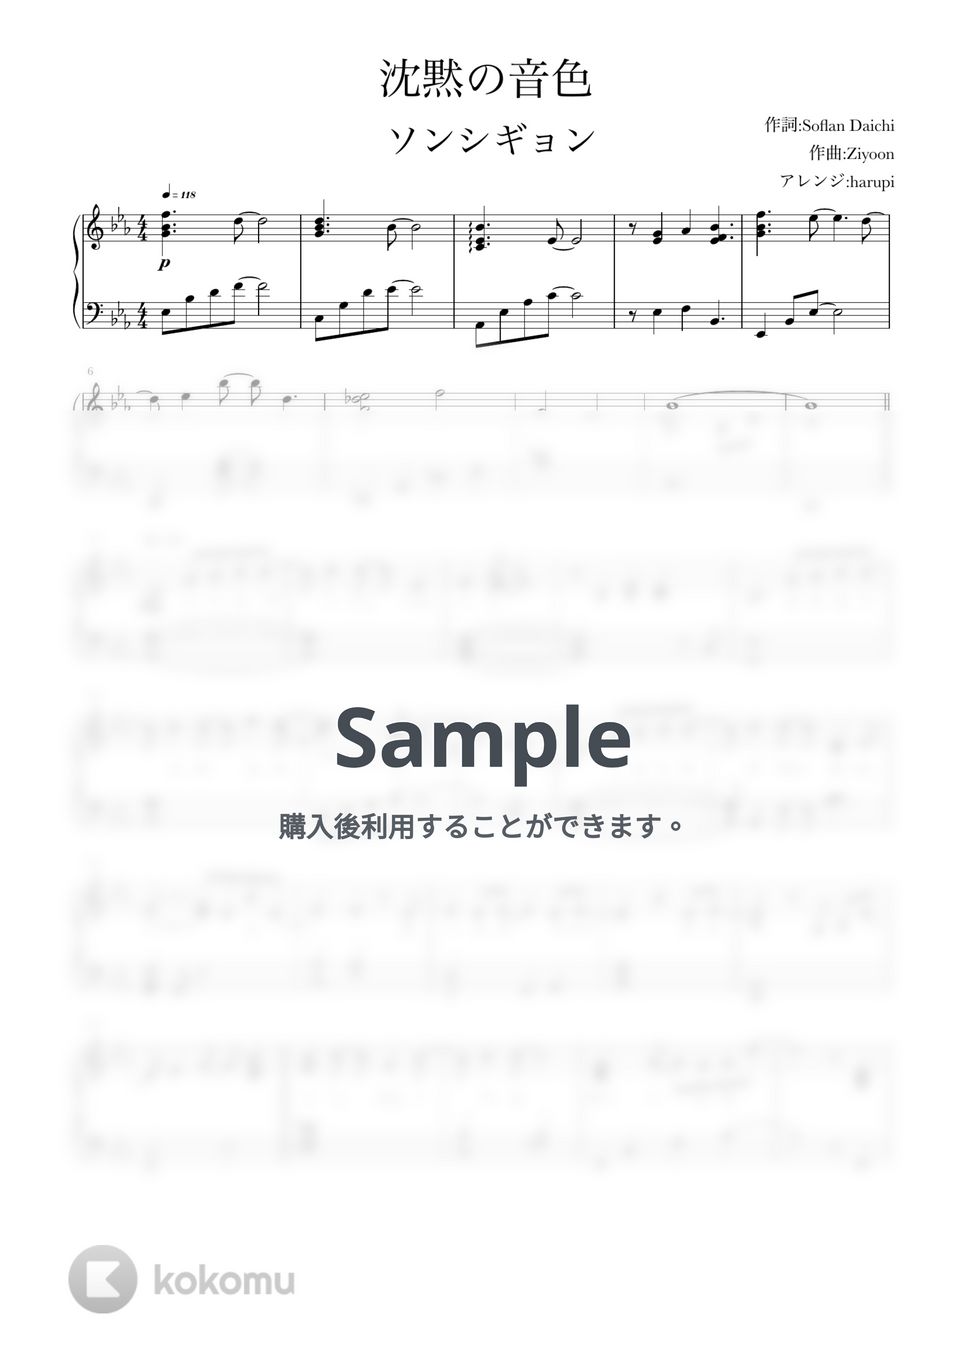 ソンシギョン - 沈黙の音色 (ピアノソロ,ソンシギョン,沈黙の音色) by harupi